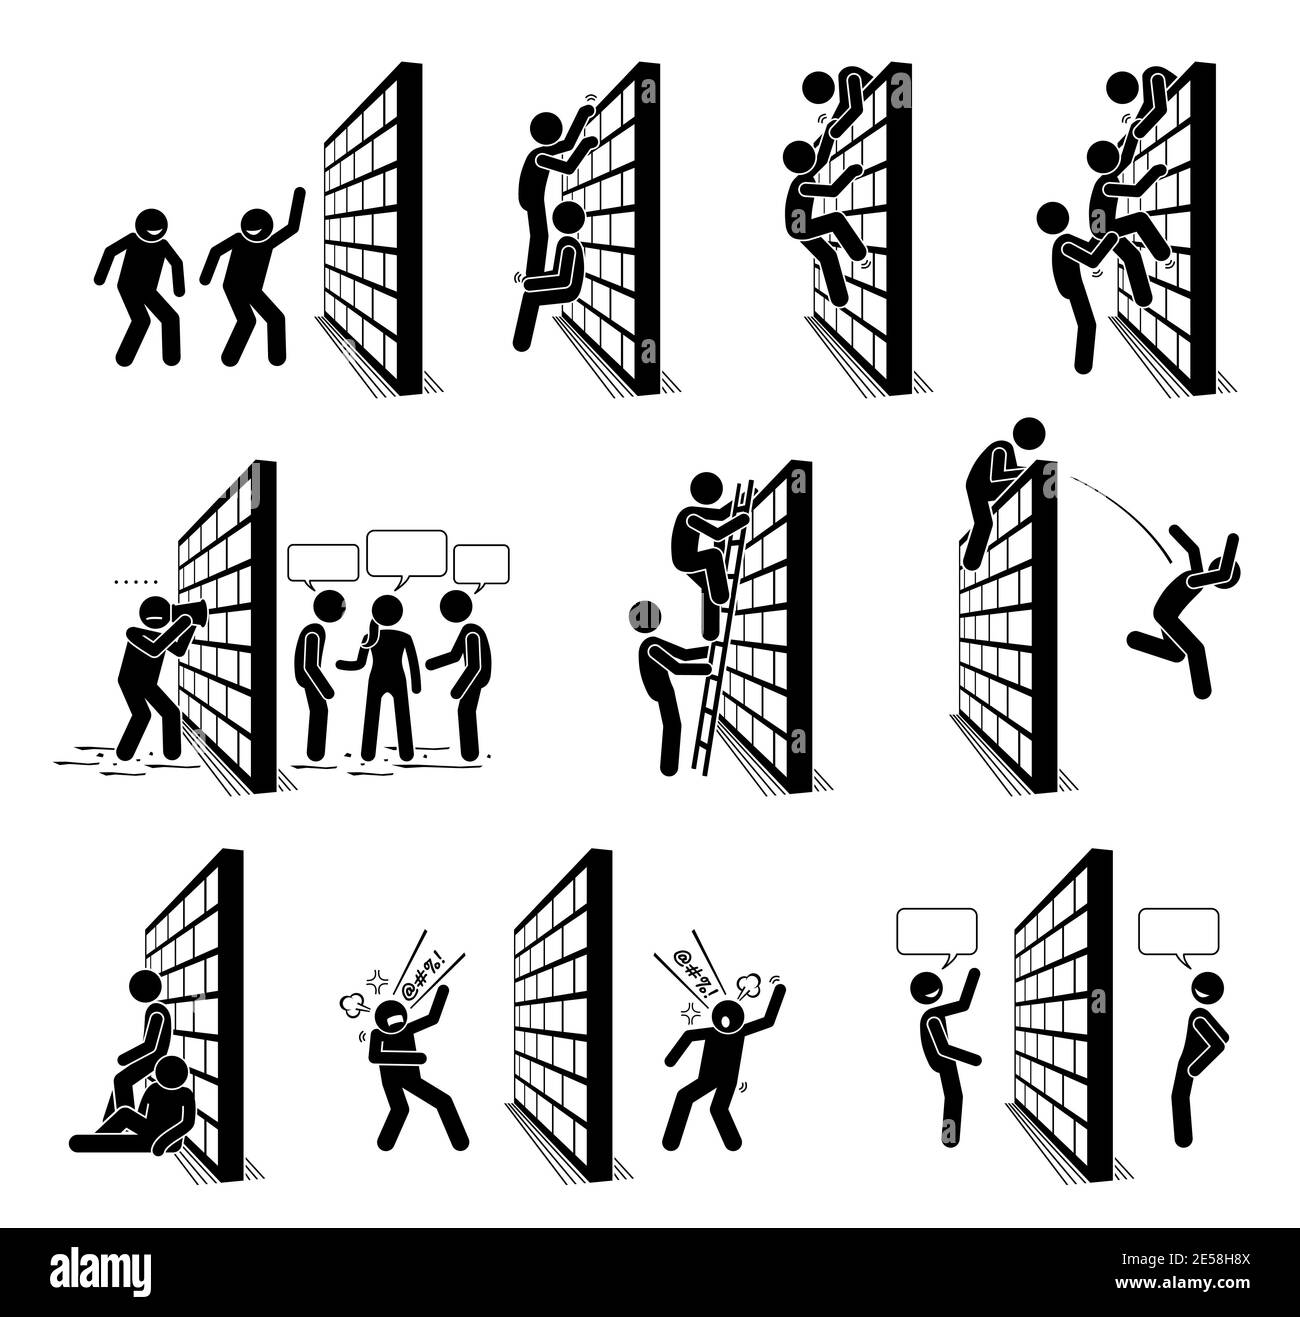 Persone con un bastone da parete figure pittogramma icone. Illustrazione vettoriale di persone che si arrampicano su un muro e che si levano sull'altro lato del muro. Illustrazione Vettoriale